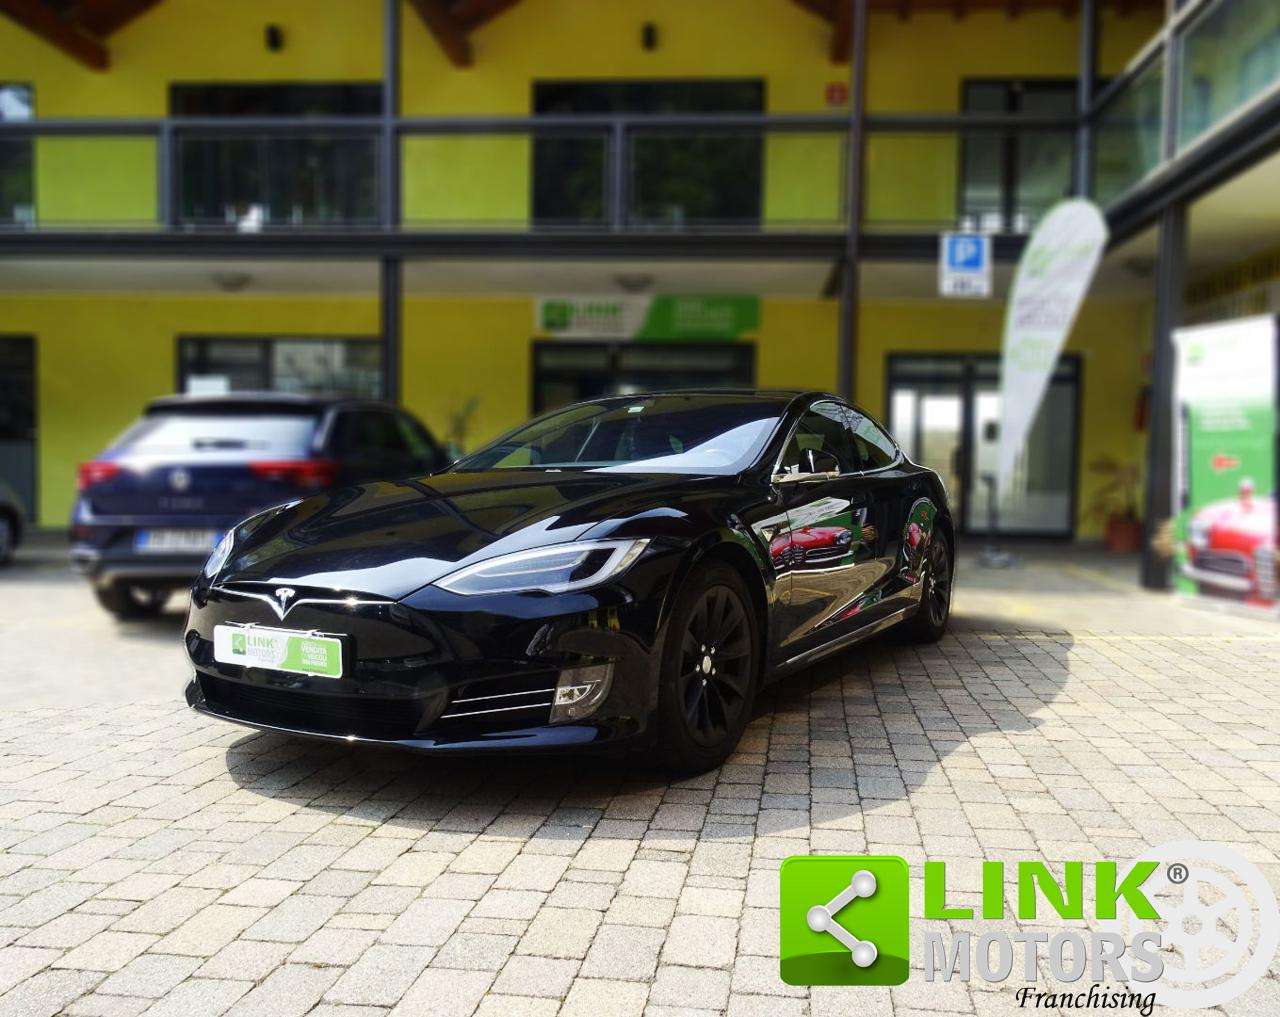 Tesla Model S Sedan in Black used in Solbiate Arno - Varese - VA for € 59,200.-